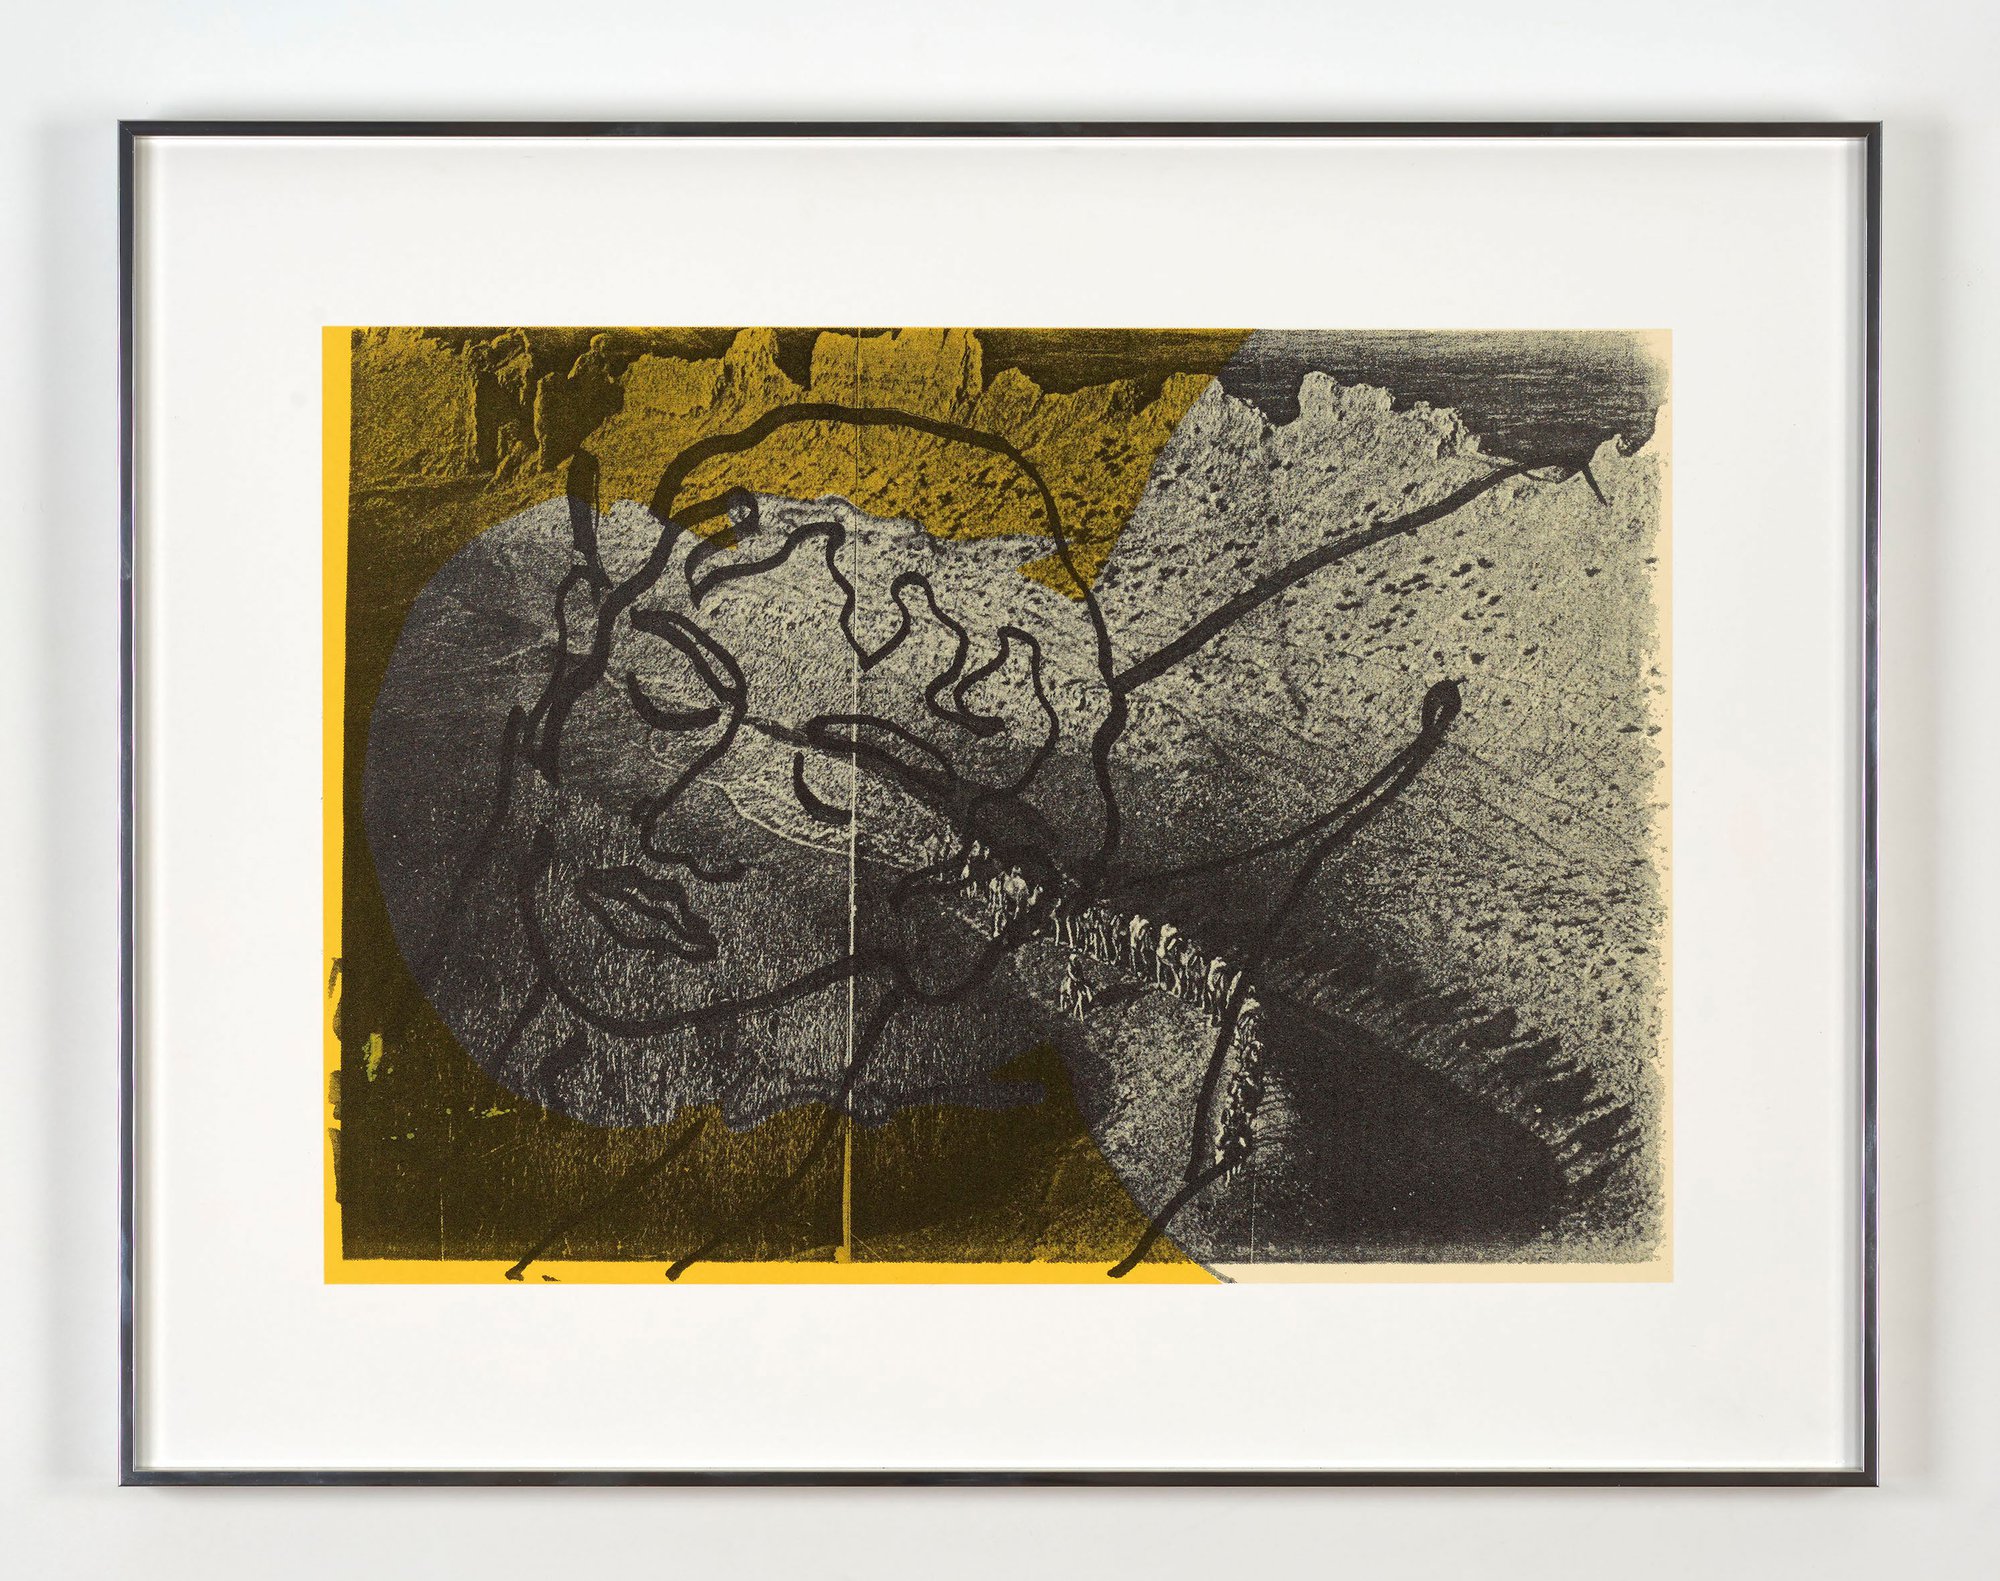 Lukas Duwenhögger, Rest on Flight, silkscreen print on paper, 29.5 x 42.5 cm, edition of 35 + 5AP, 1979/2014